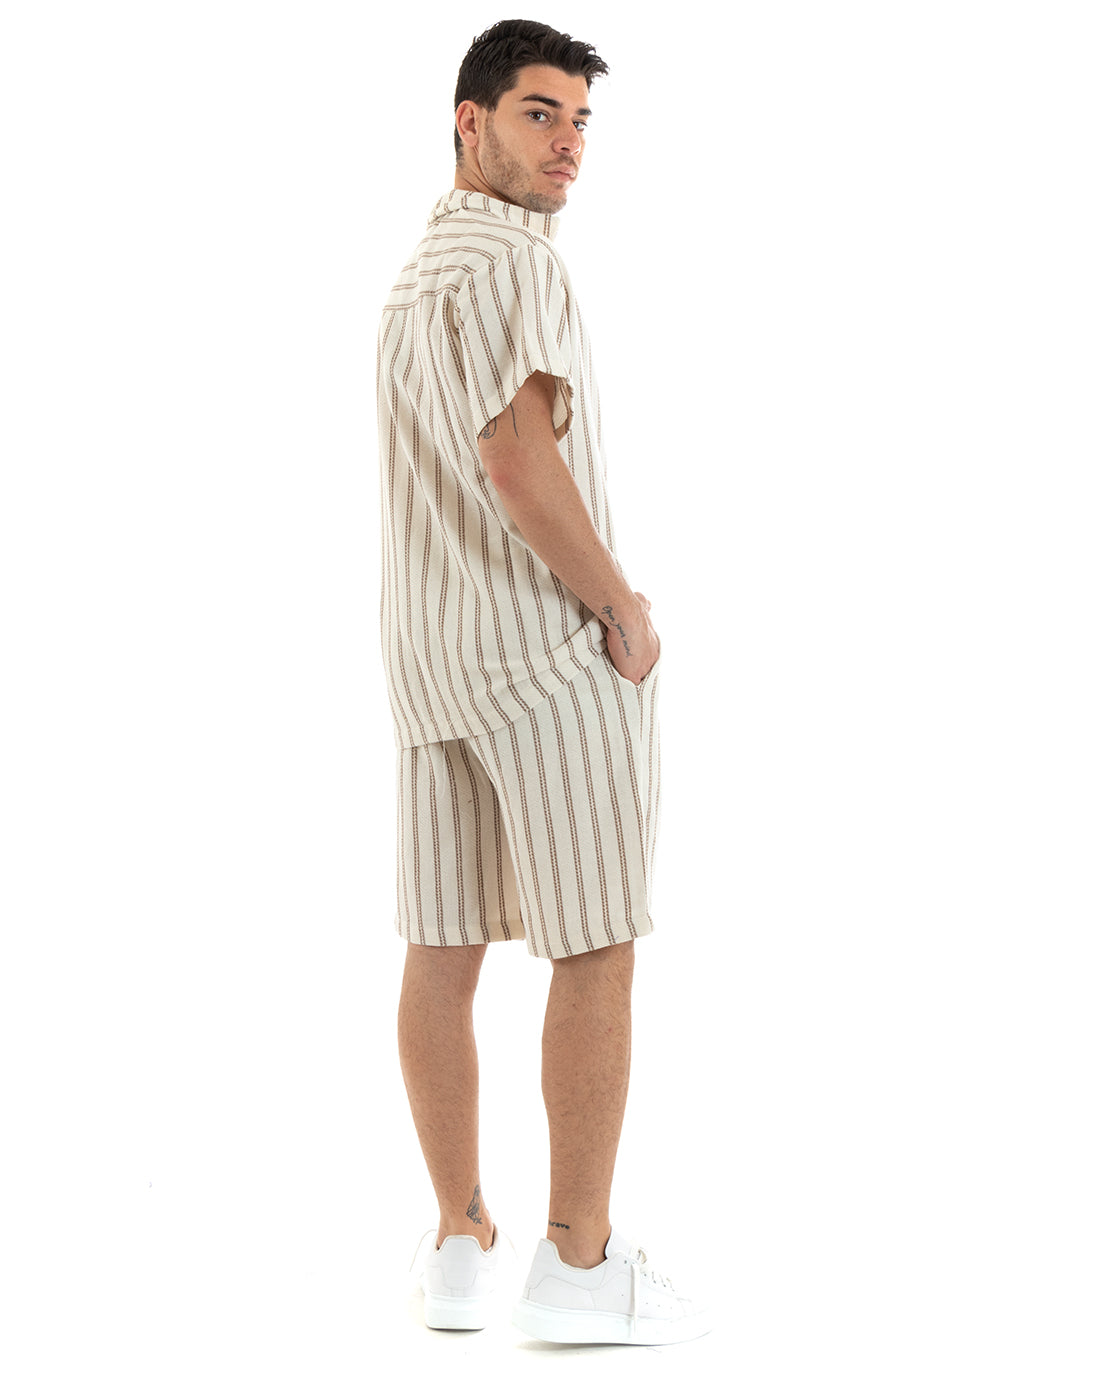 Completo Set Coordinato Uomo Cotone Camicia Con Colletto Bermuda Outfit Beige GIOSAL-OU2320A